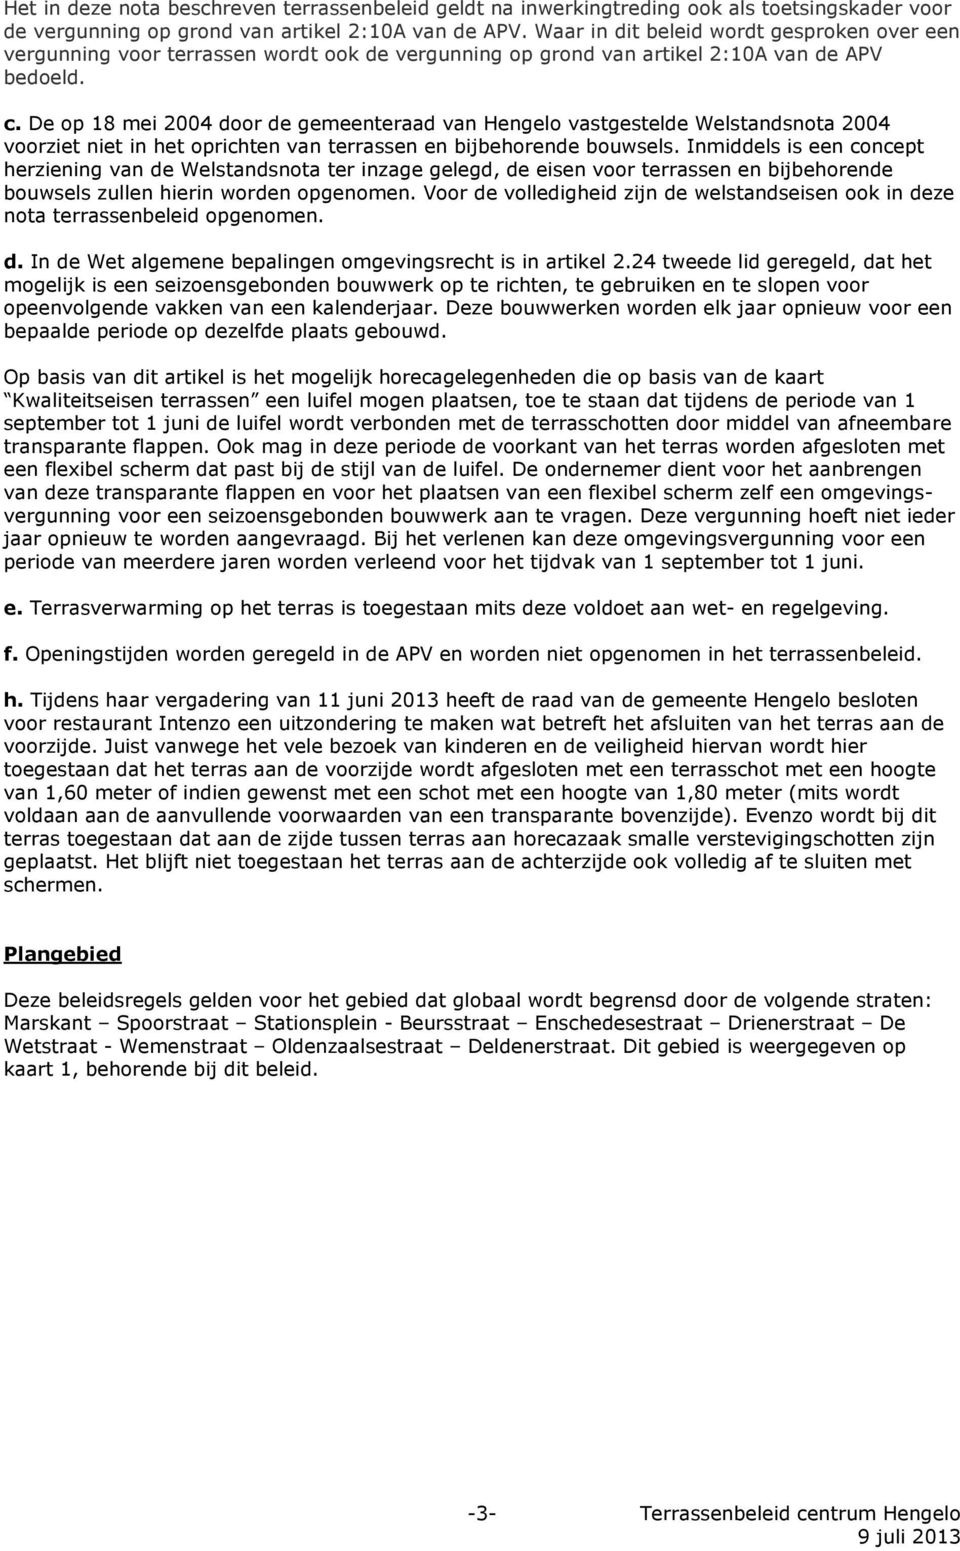 De op 18 mei 2004 door de gemeenteraad van Hengelo vastgestelde Welstandsnota 2004 voorziet niet in het oprichten van terrassen en bijbehorende bouwsels.